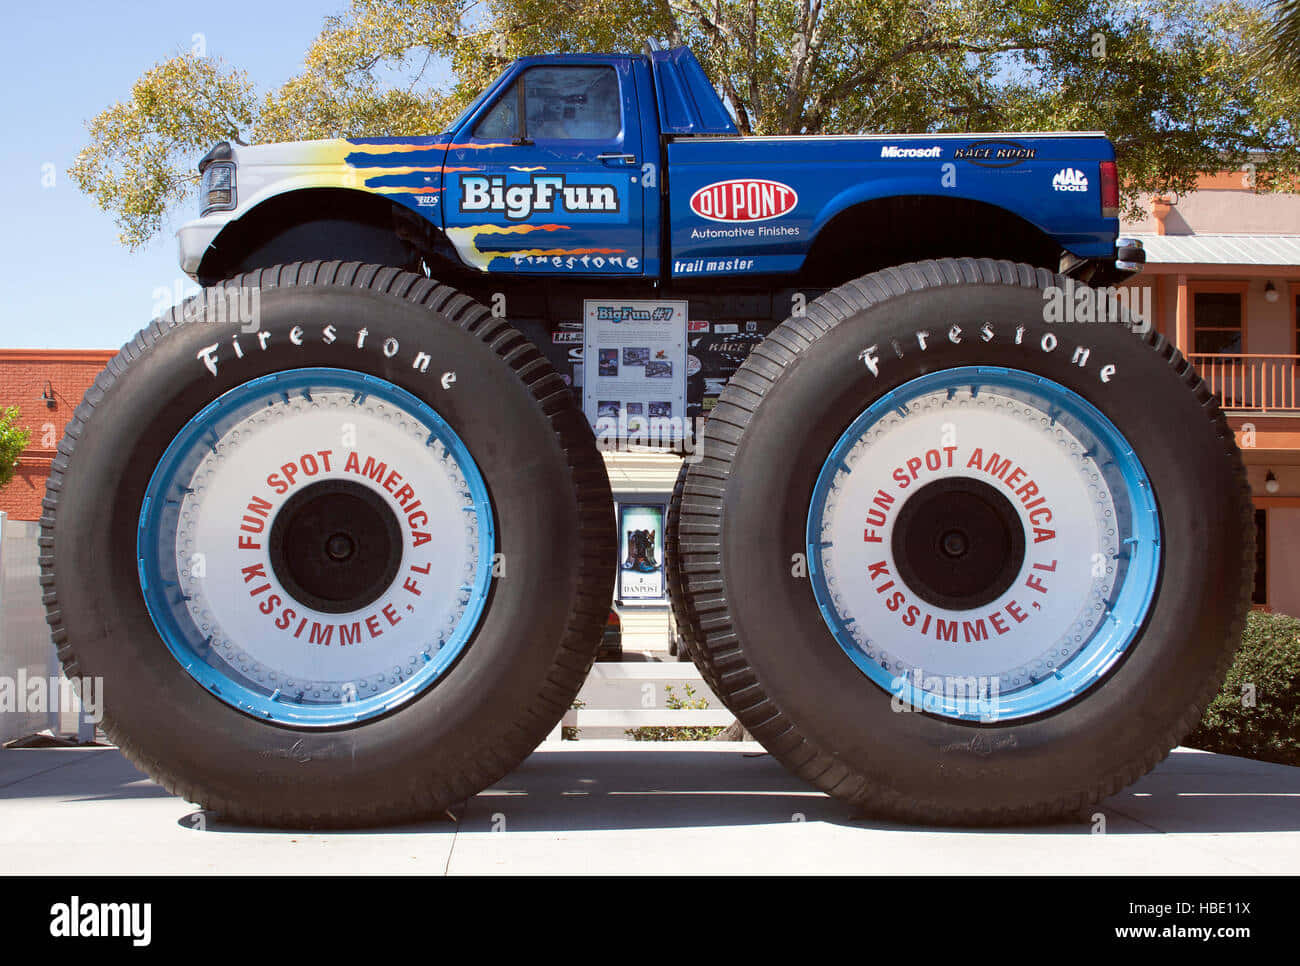 Unaimagen De Archivo De Un Monster Truck Con Neumáticos Grandes En Exhibición En Un Parque.